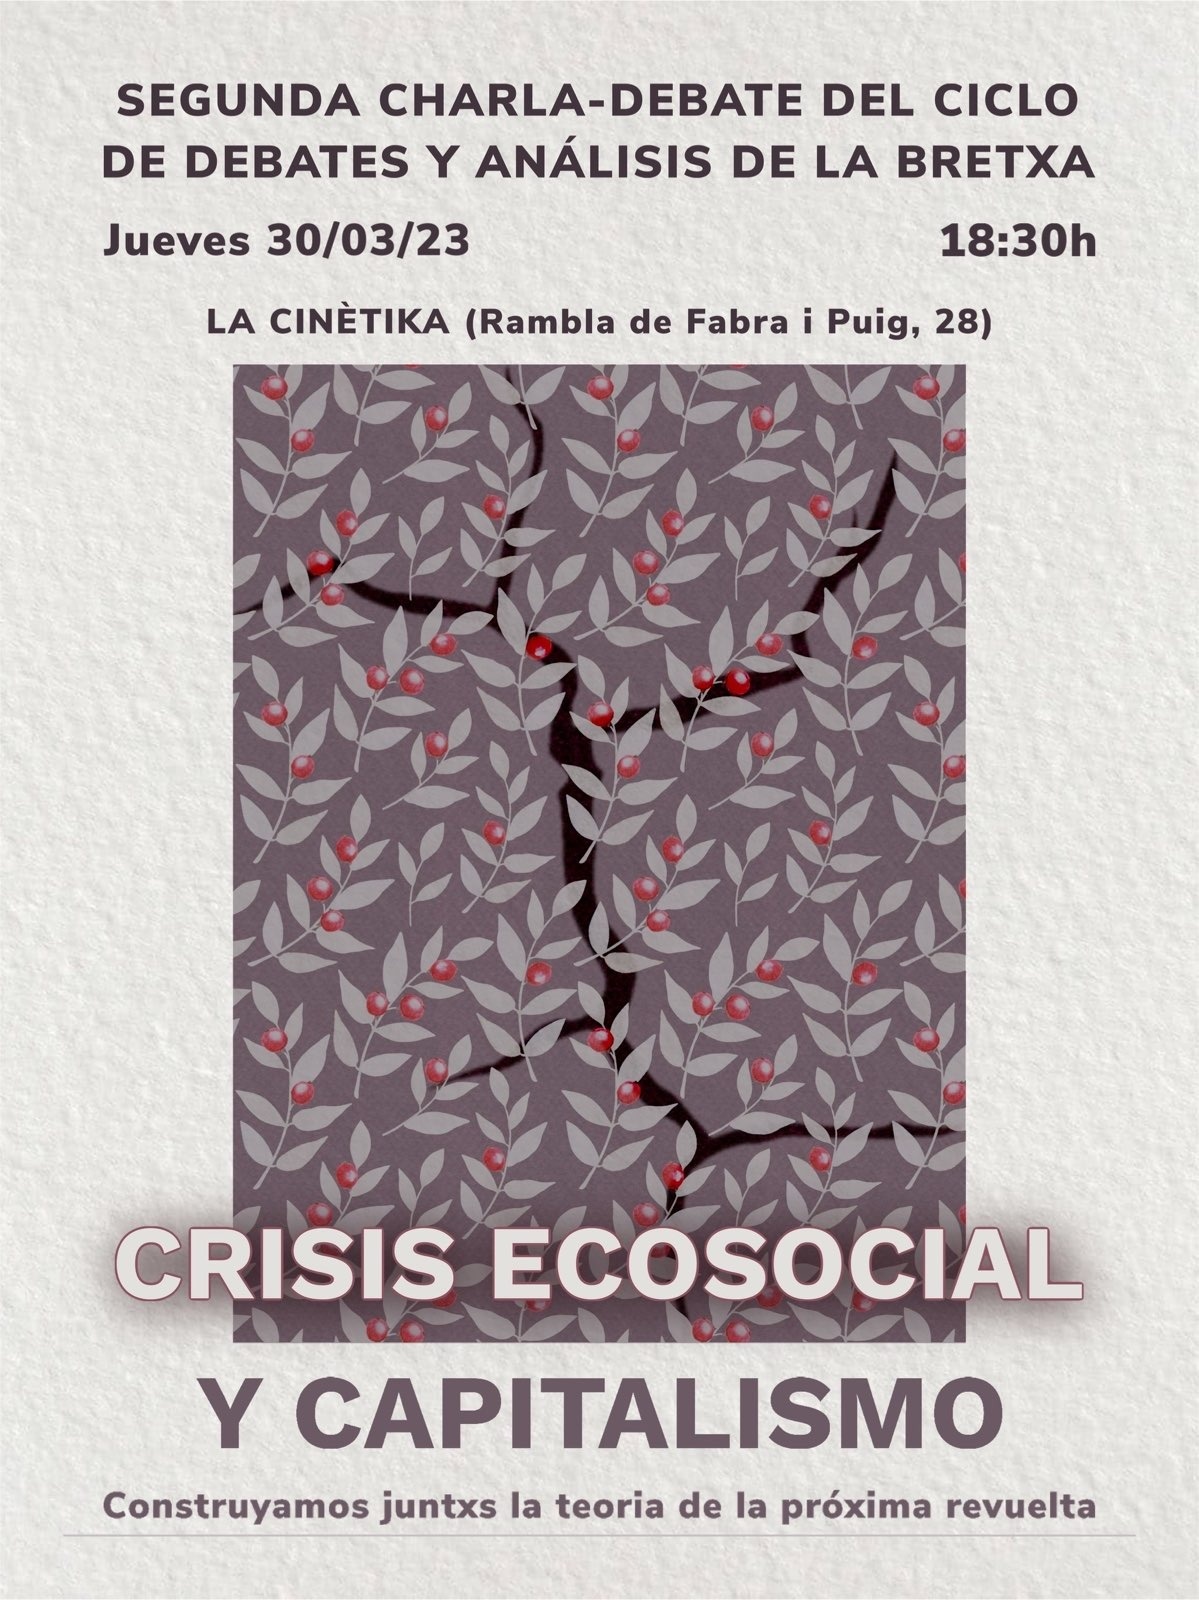 Crisis ecosocial y capitalismo